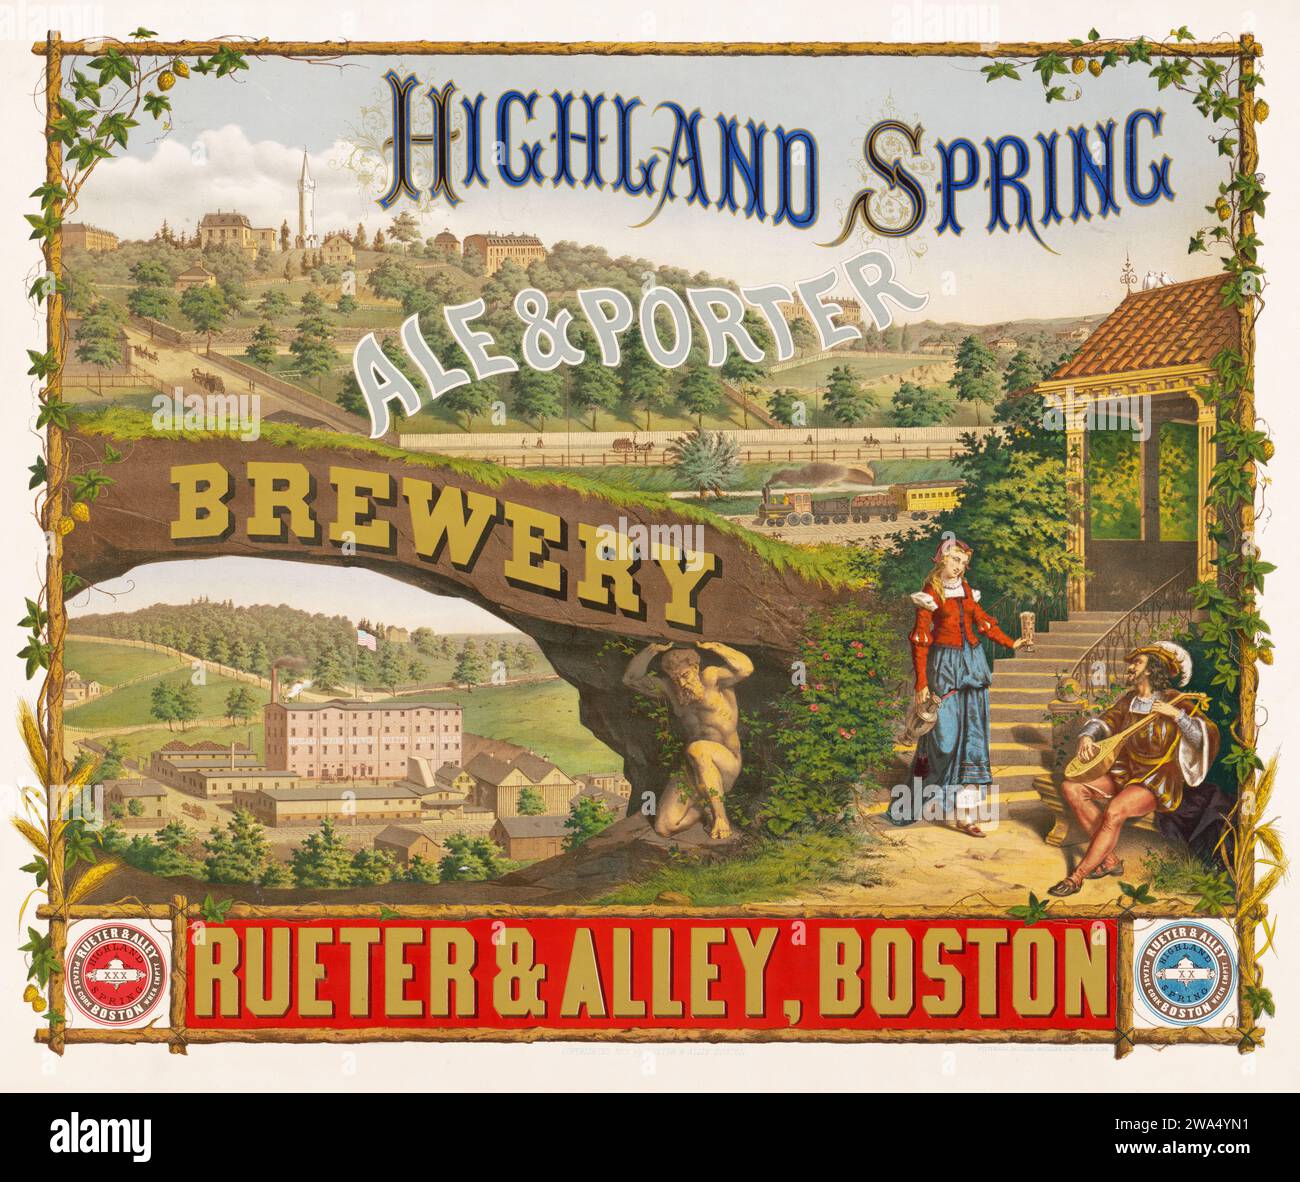 Highland Spring, birreria birraria e porter - Rueter & Alley, Boston - poster pubblicitario sulla birra antica, 1876 Foto Stock